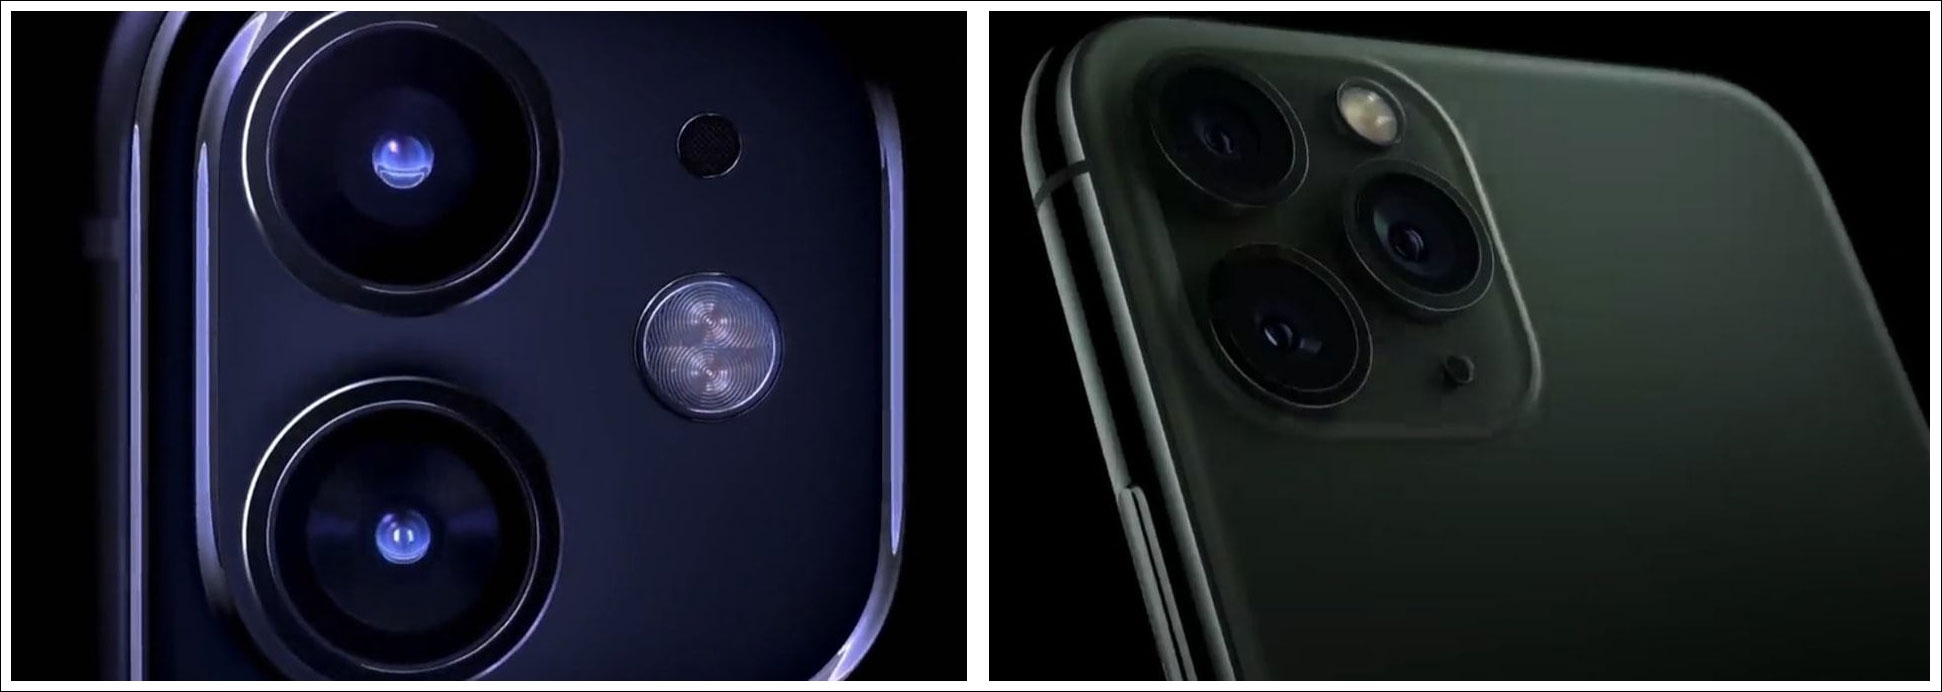 مقارنة الكاميرات في سلسلة هواتف أيفون 11 (iPhone 11)